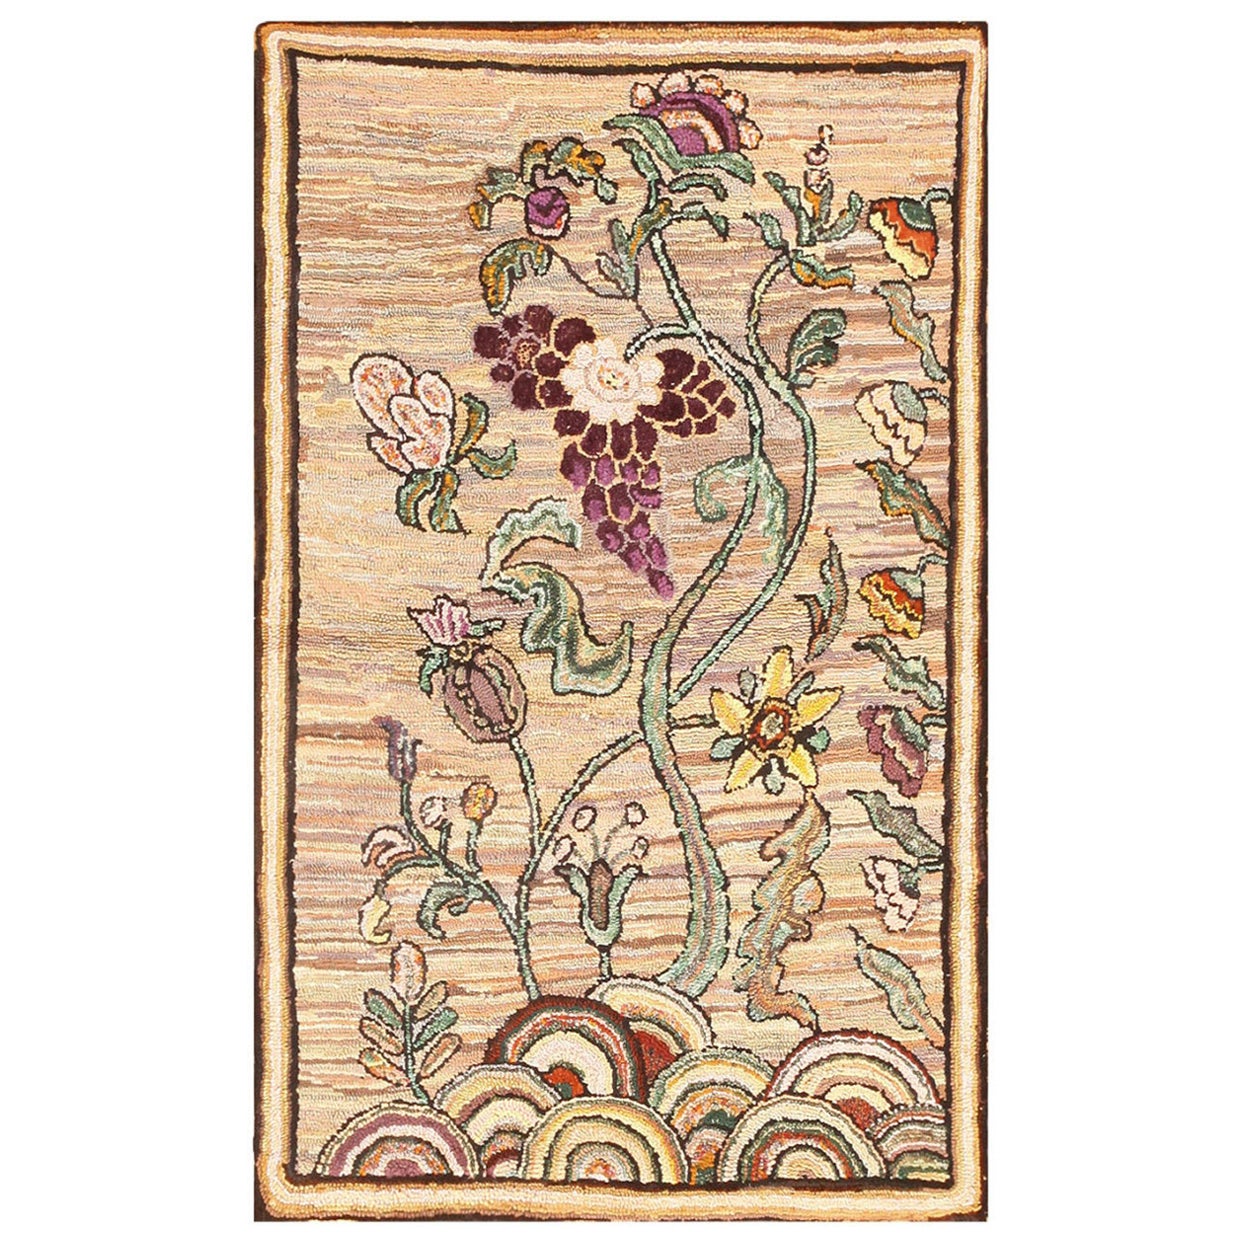 Prächtiger antiker Teppich mit Kapuze mit Blumenmuster aus Amerika 2'6" x 3'11"